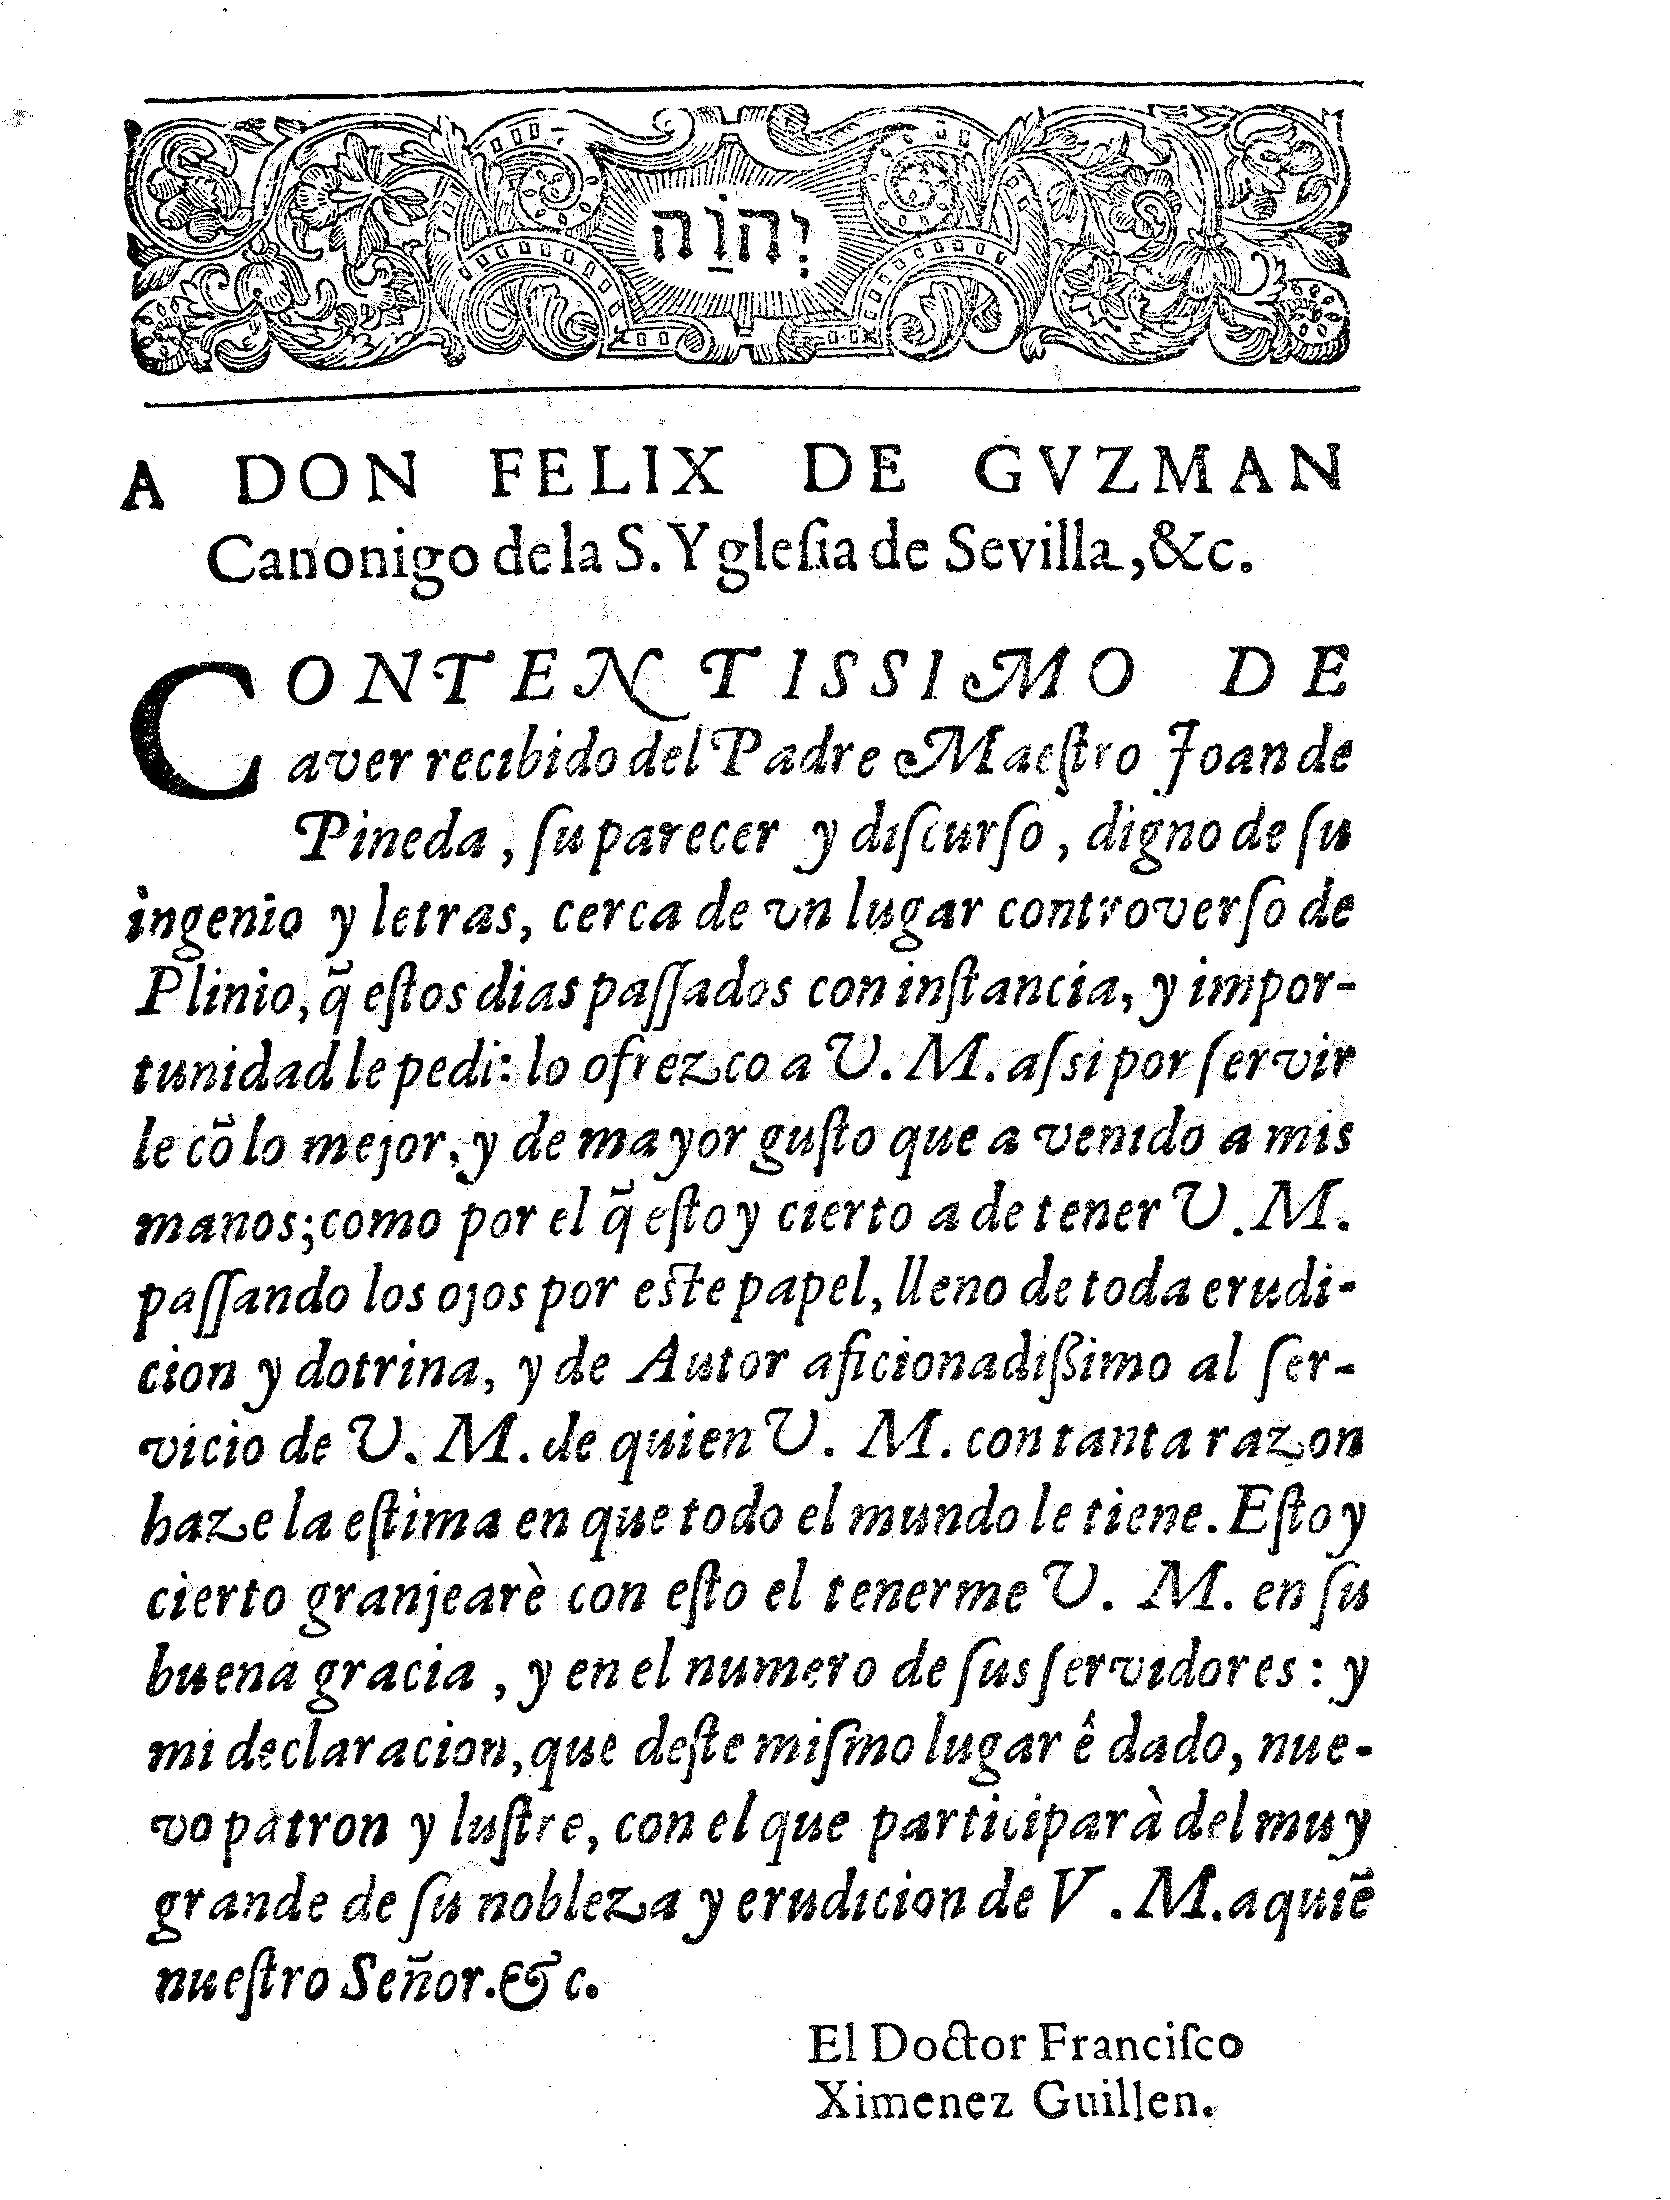 A Don Felix de Guzman Canonigo de la S. Yglesia de Sevilla, &c.